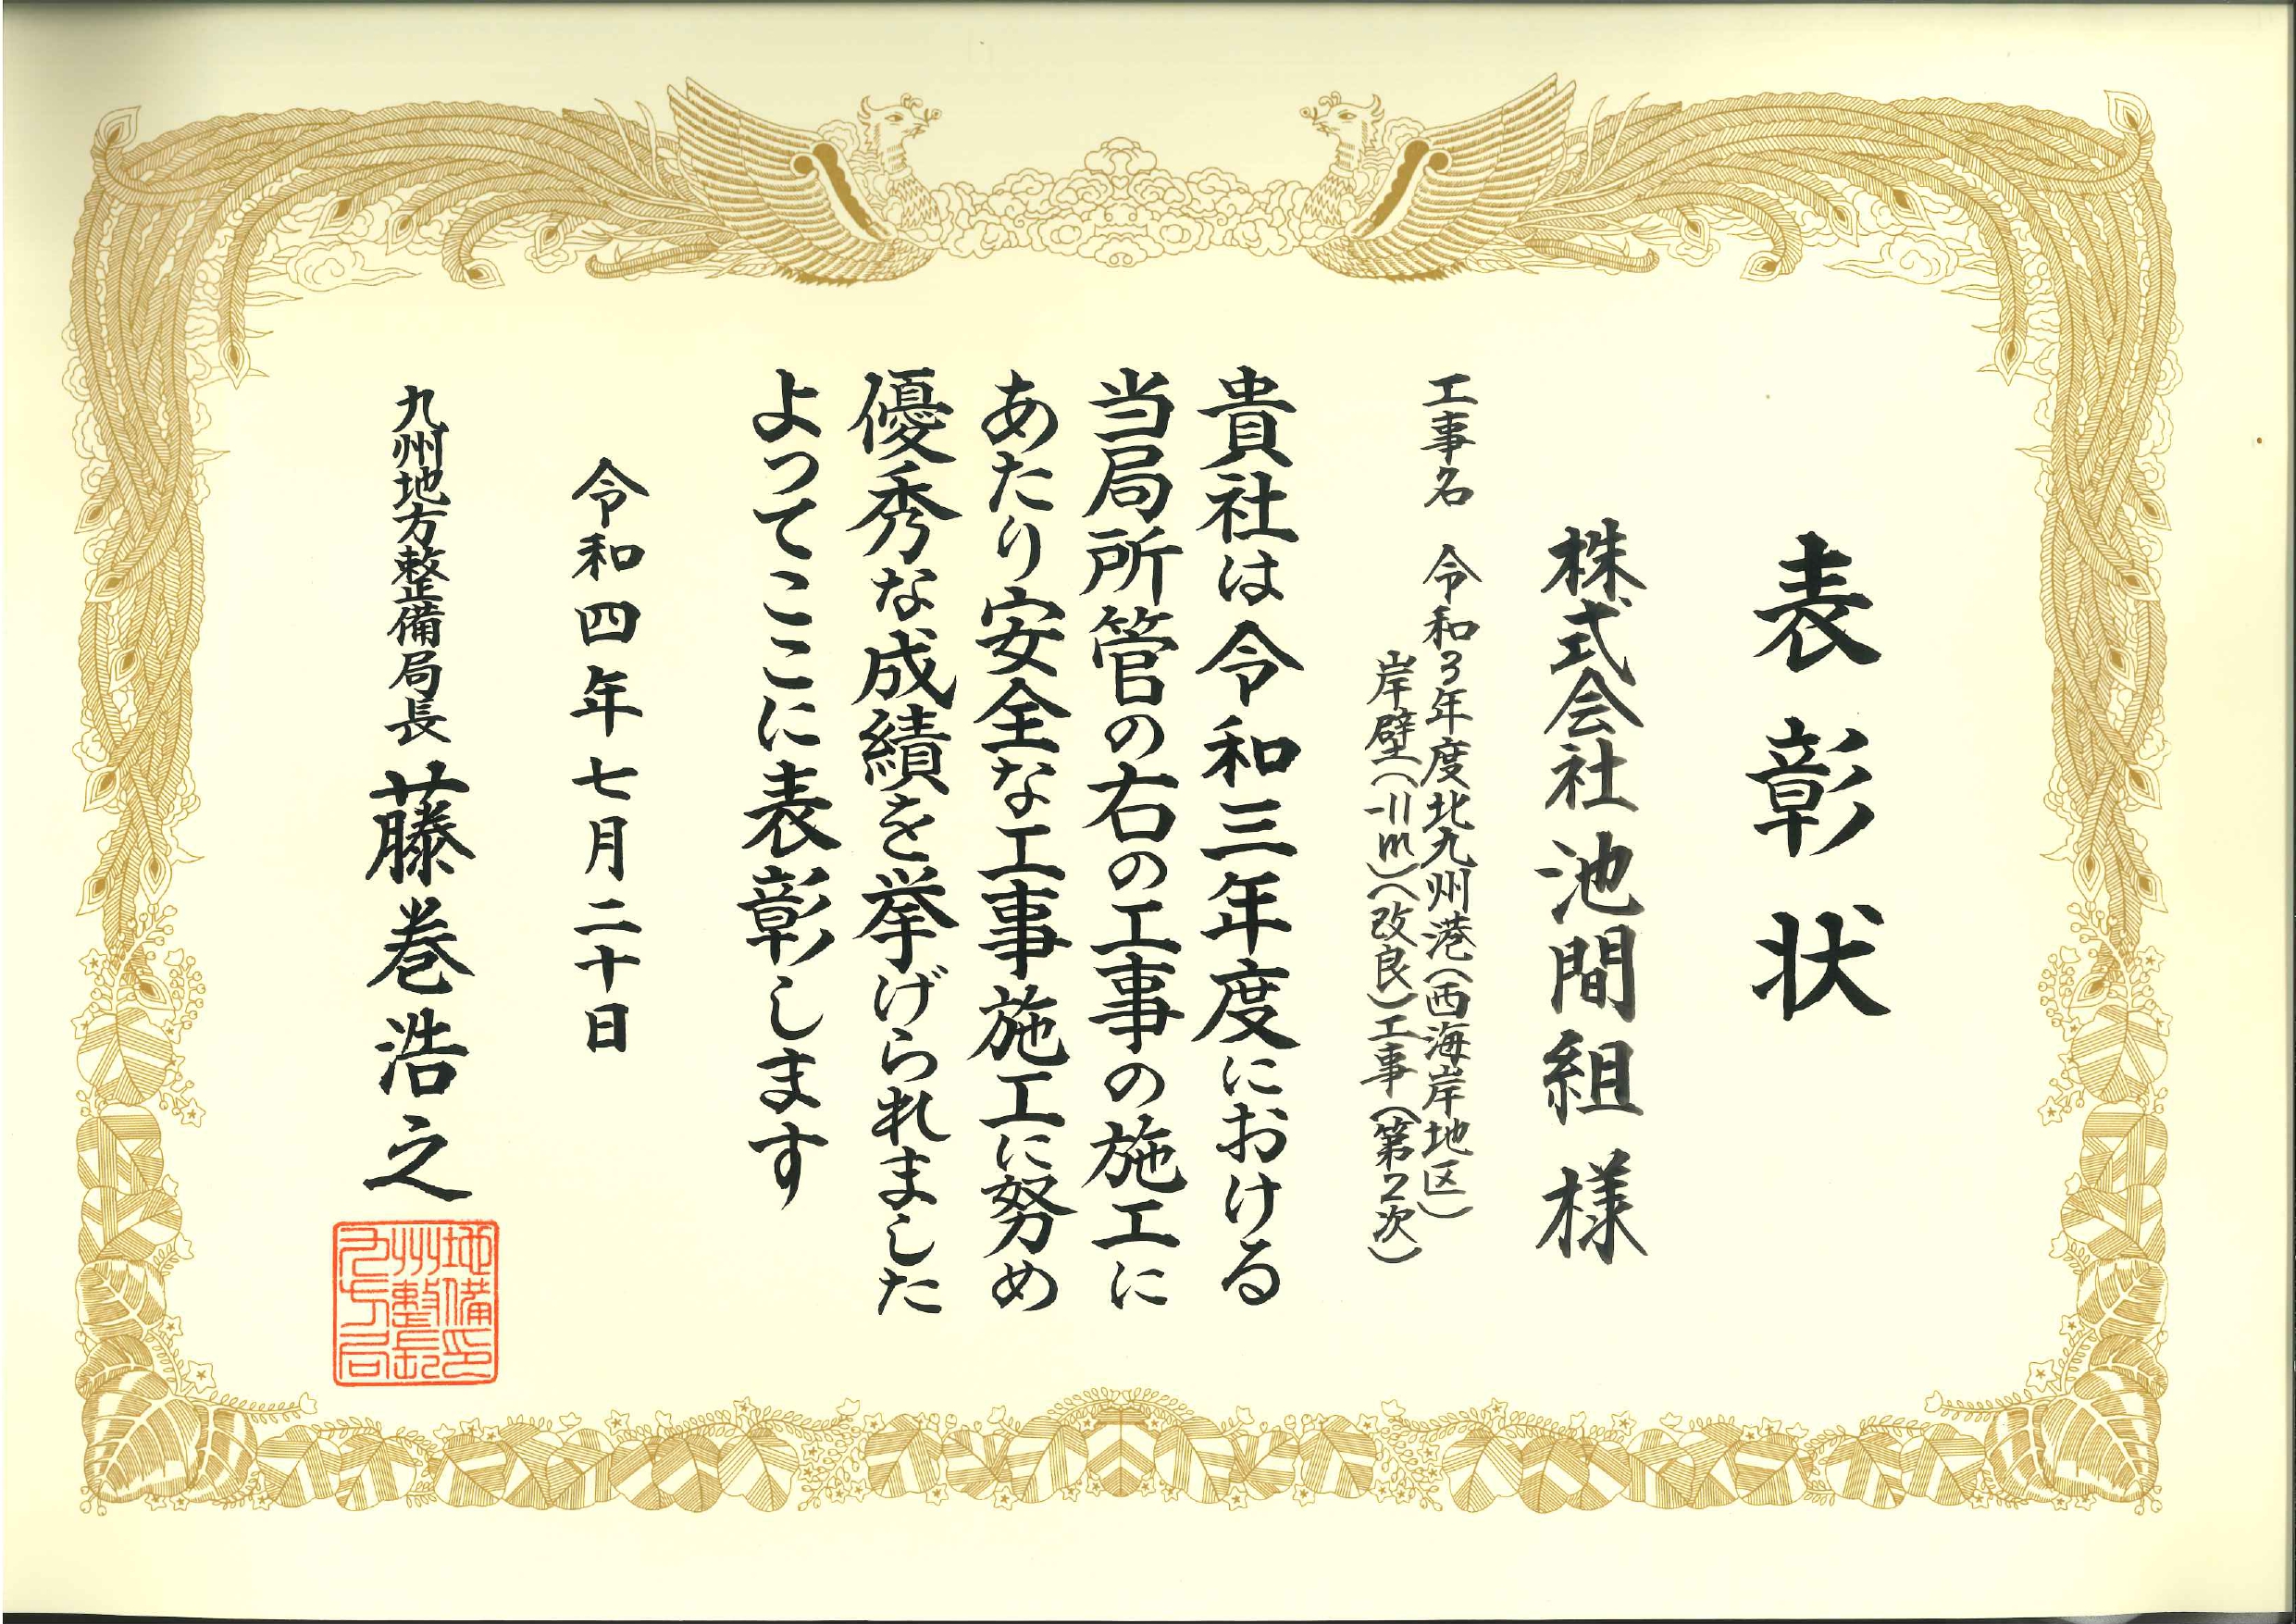 九州地方整備局より表彰をされました